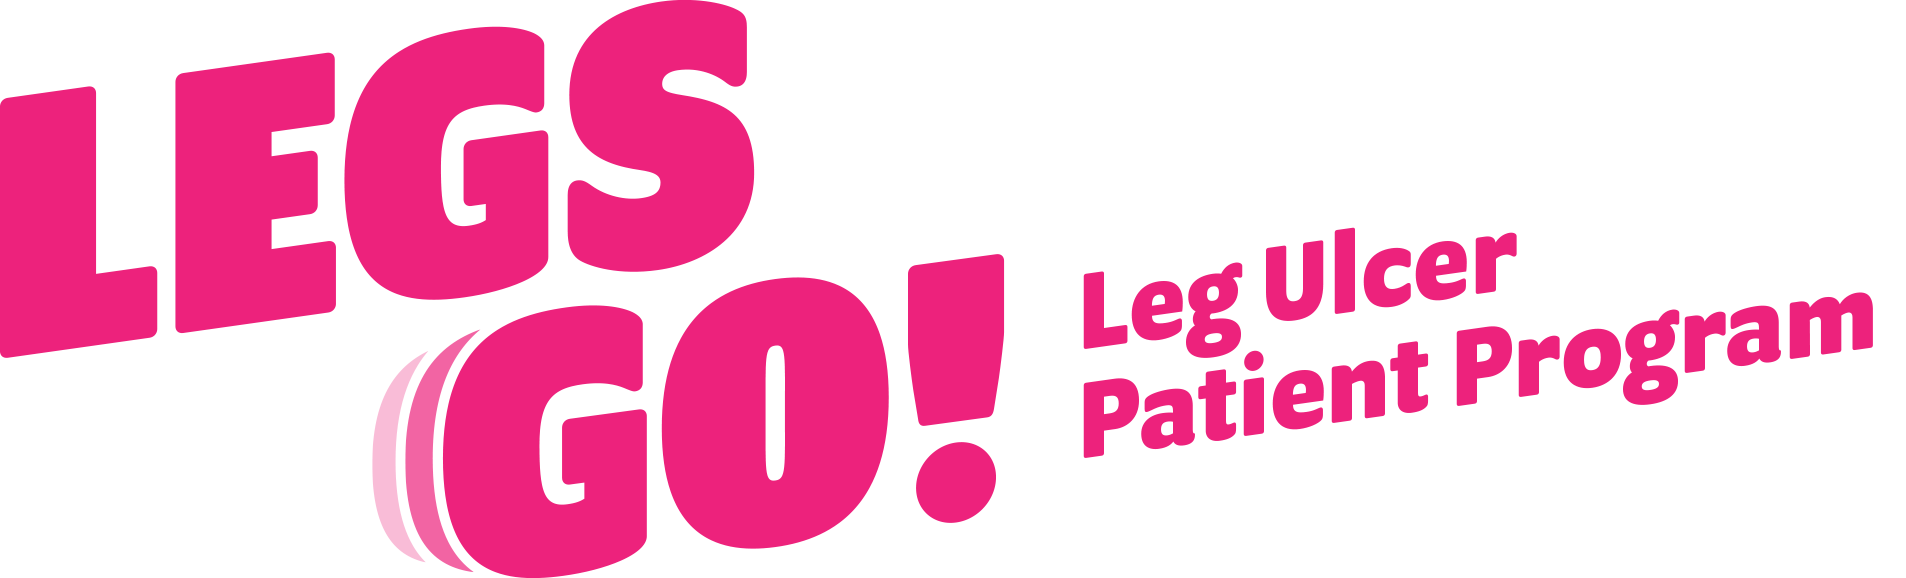 Legs Go Logo